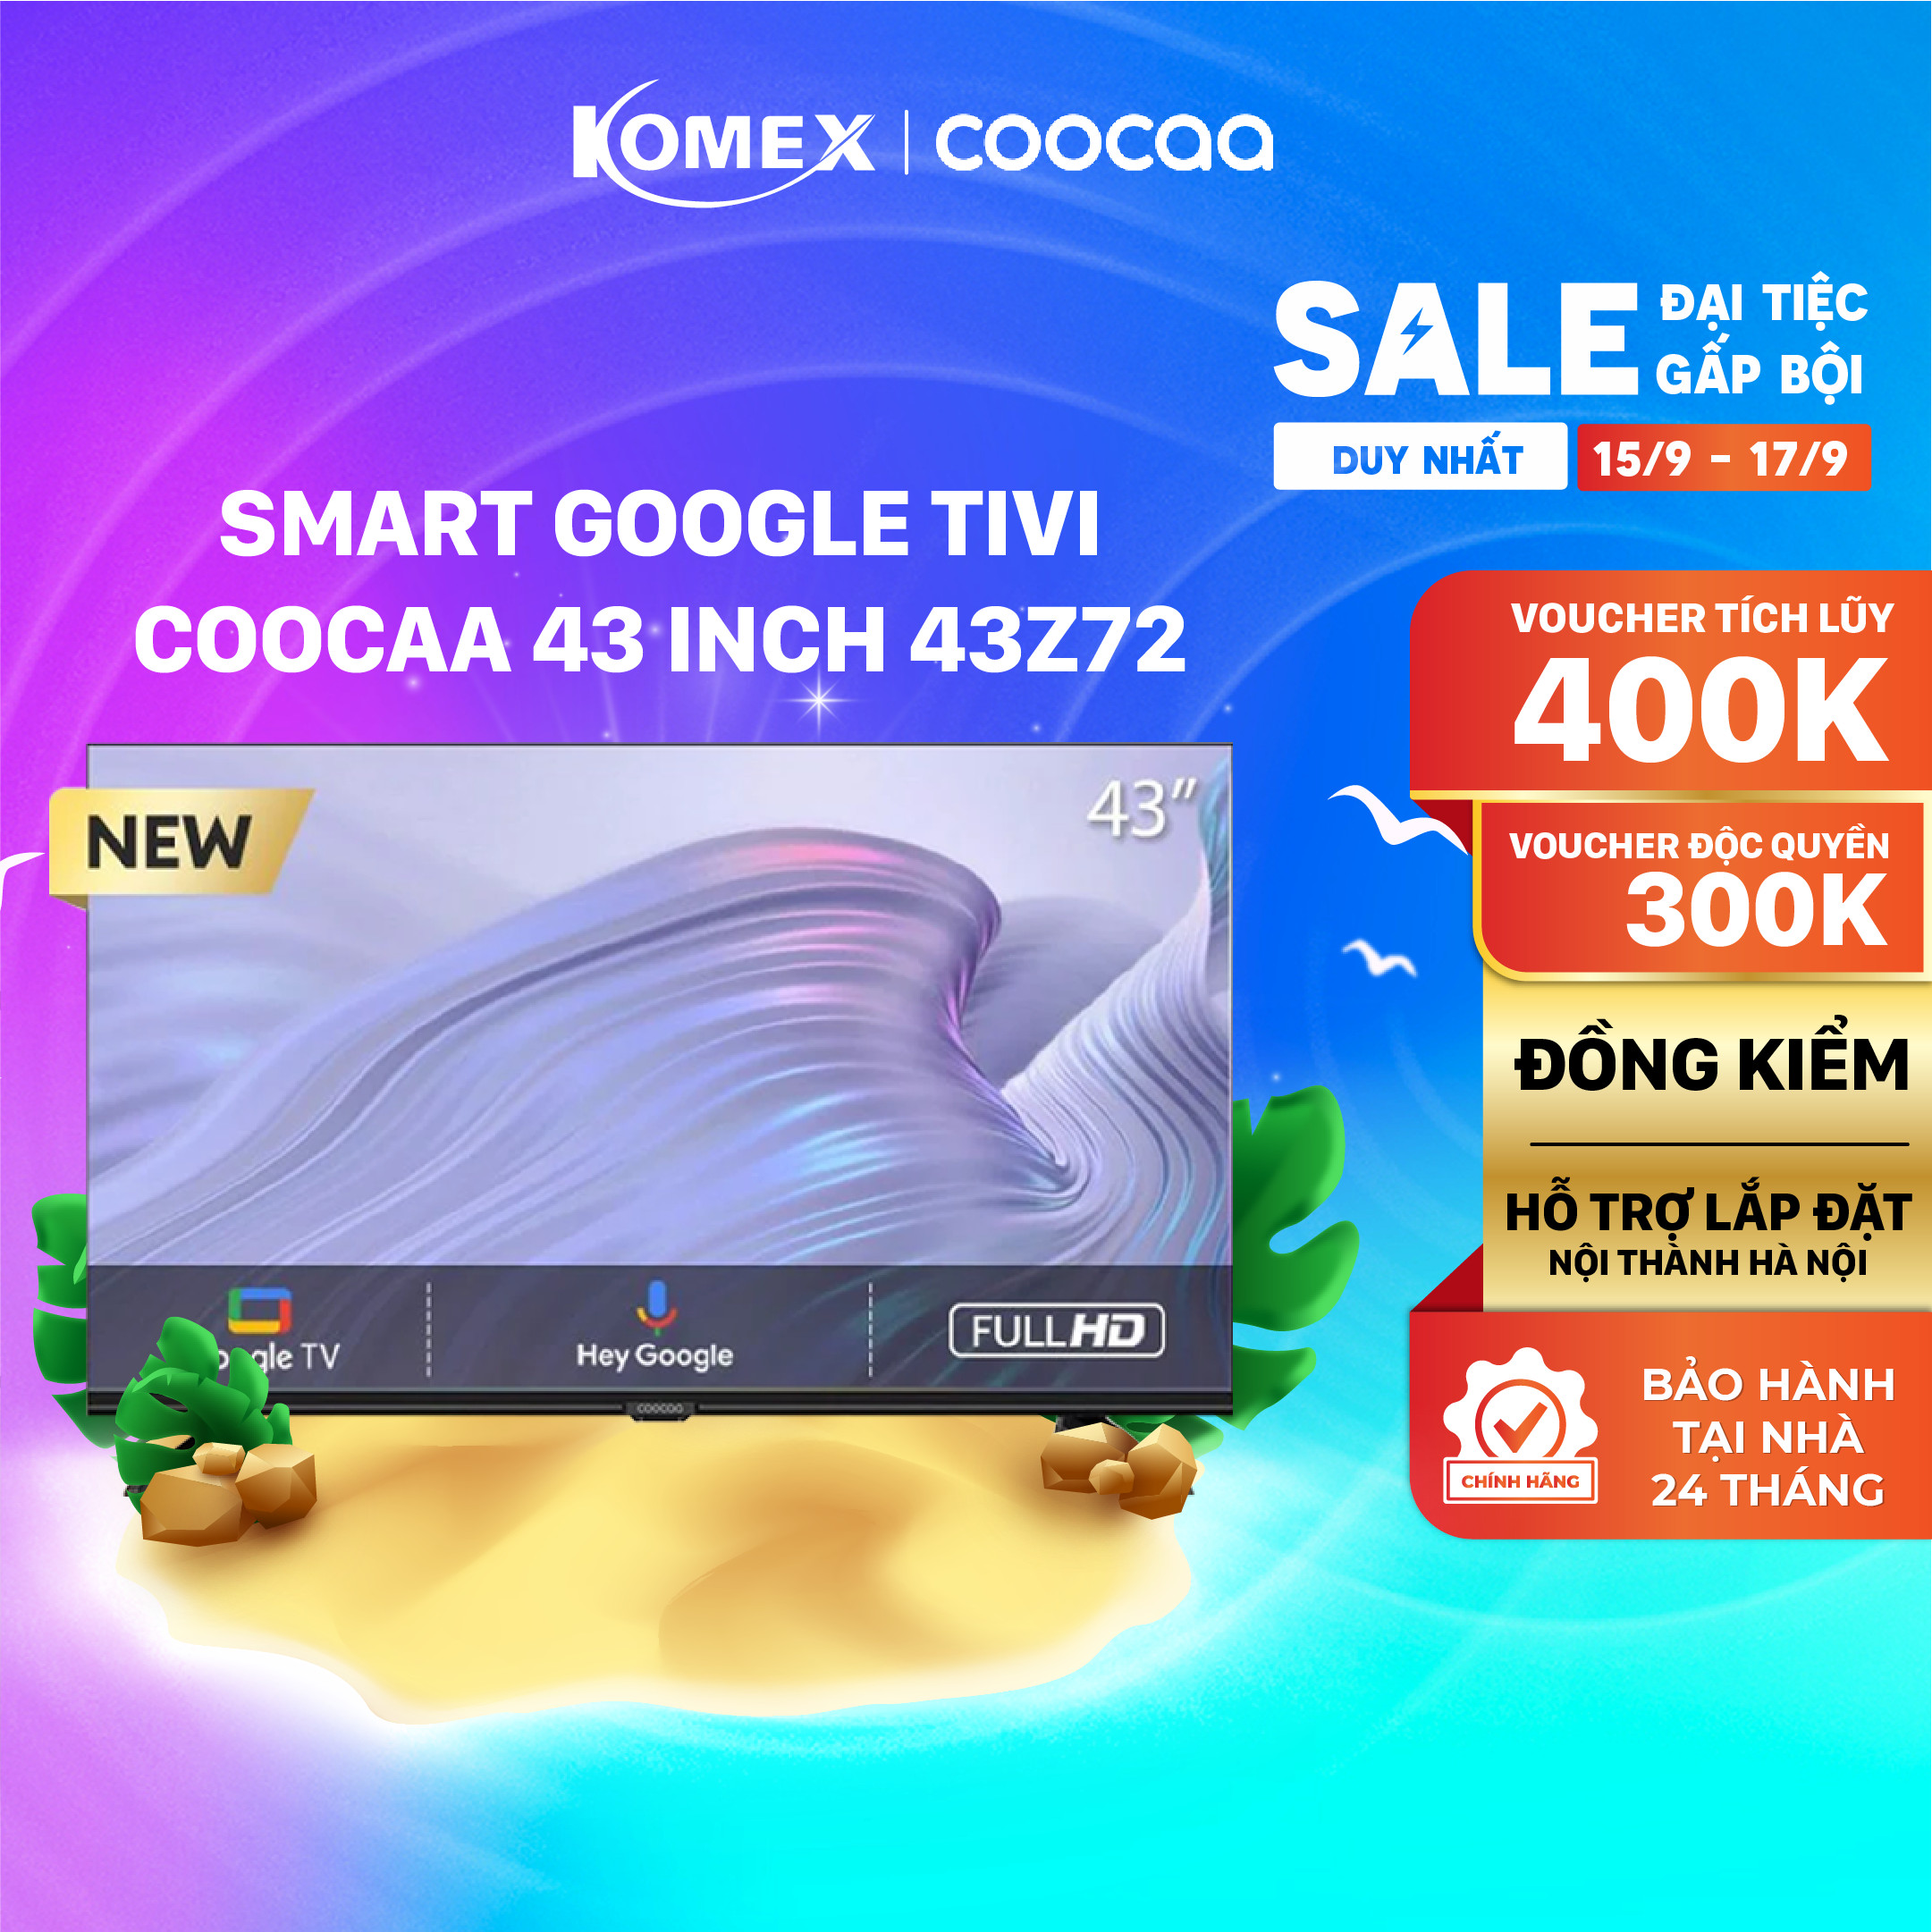 Tivi Coocaa 43 inch 43Z72 Smart tivi dùng hệ điều hành google điều khiển bằng giọng nói, Đồng kiểm, Đổi trả 30 ngày, Bảo hành 2 Năm - Komex